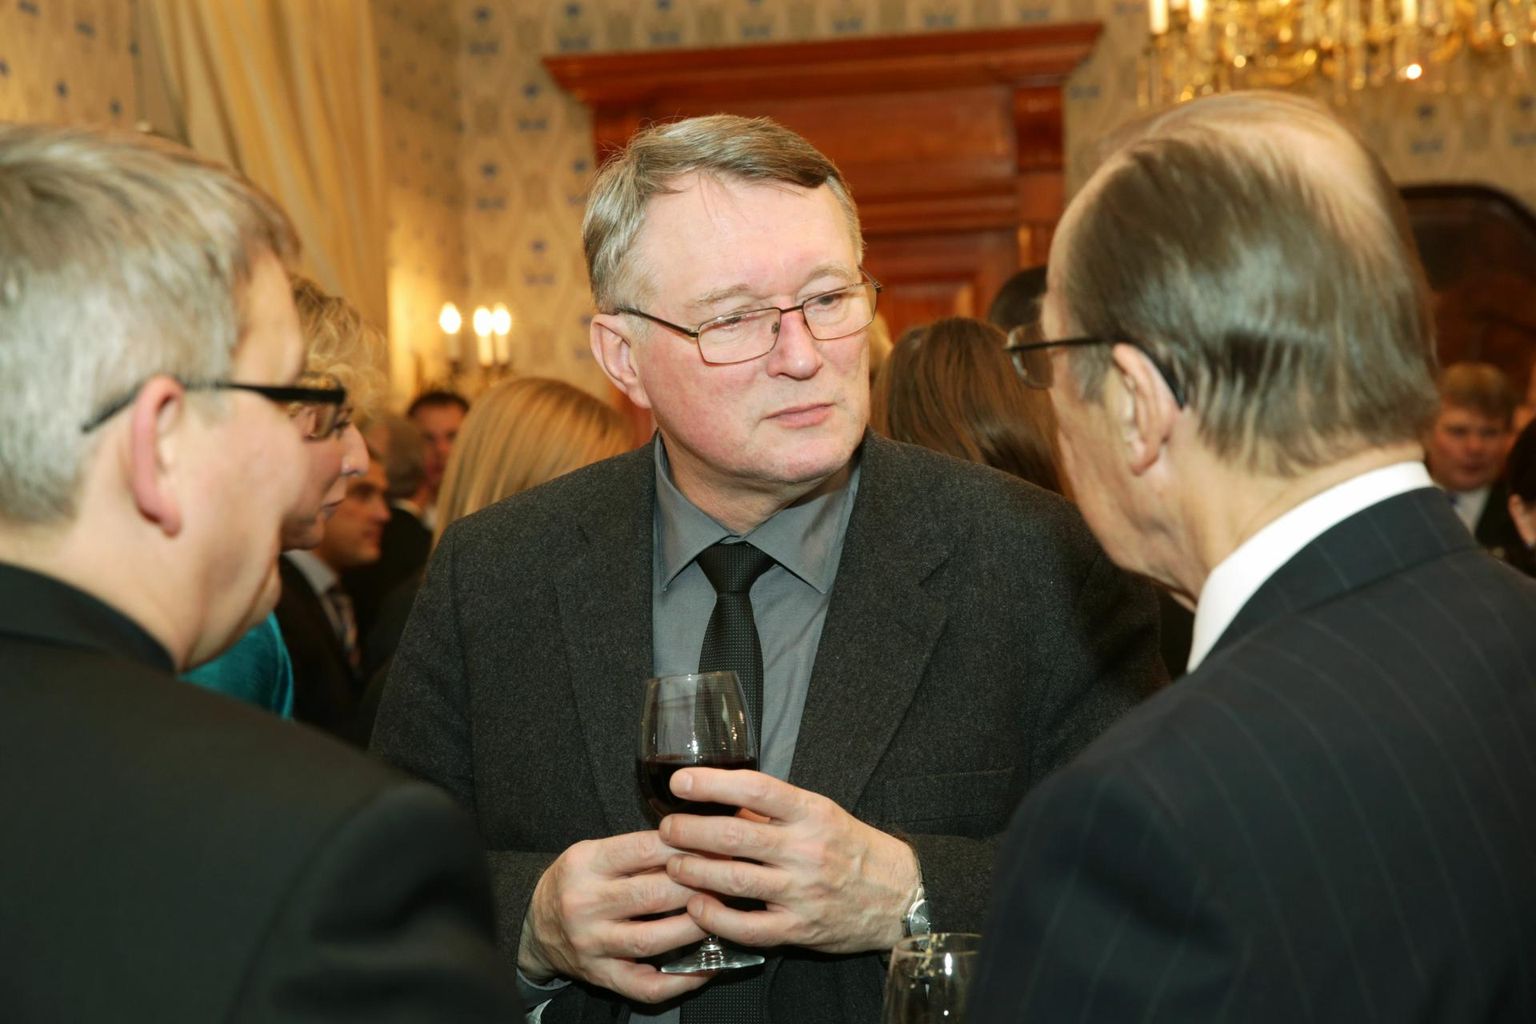 Sellel fotojäädvustusel osaleb Raul Mälk 2013. aasta detsembris Soome Vabariigi iseseisvuspäeva puhul korraldatud suursaadik Aleksi Härköneni ja tema abikaasa vastuvõtul.